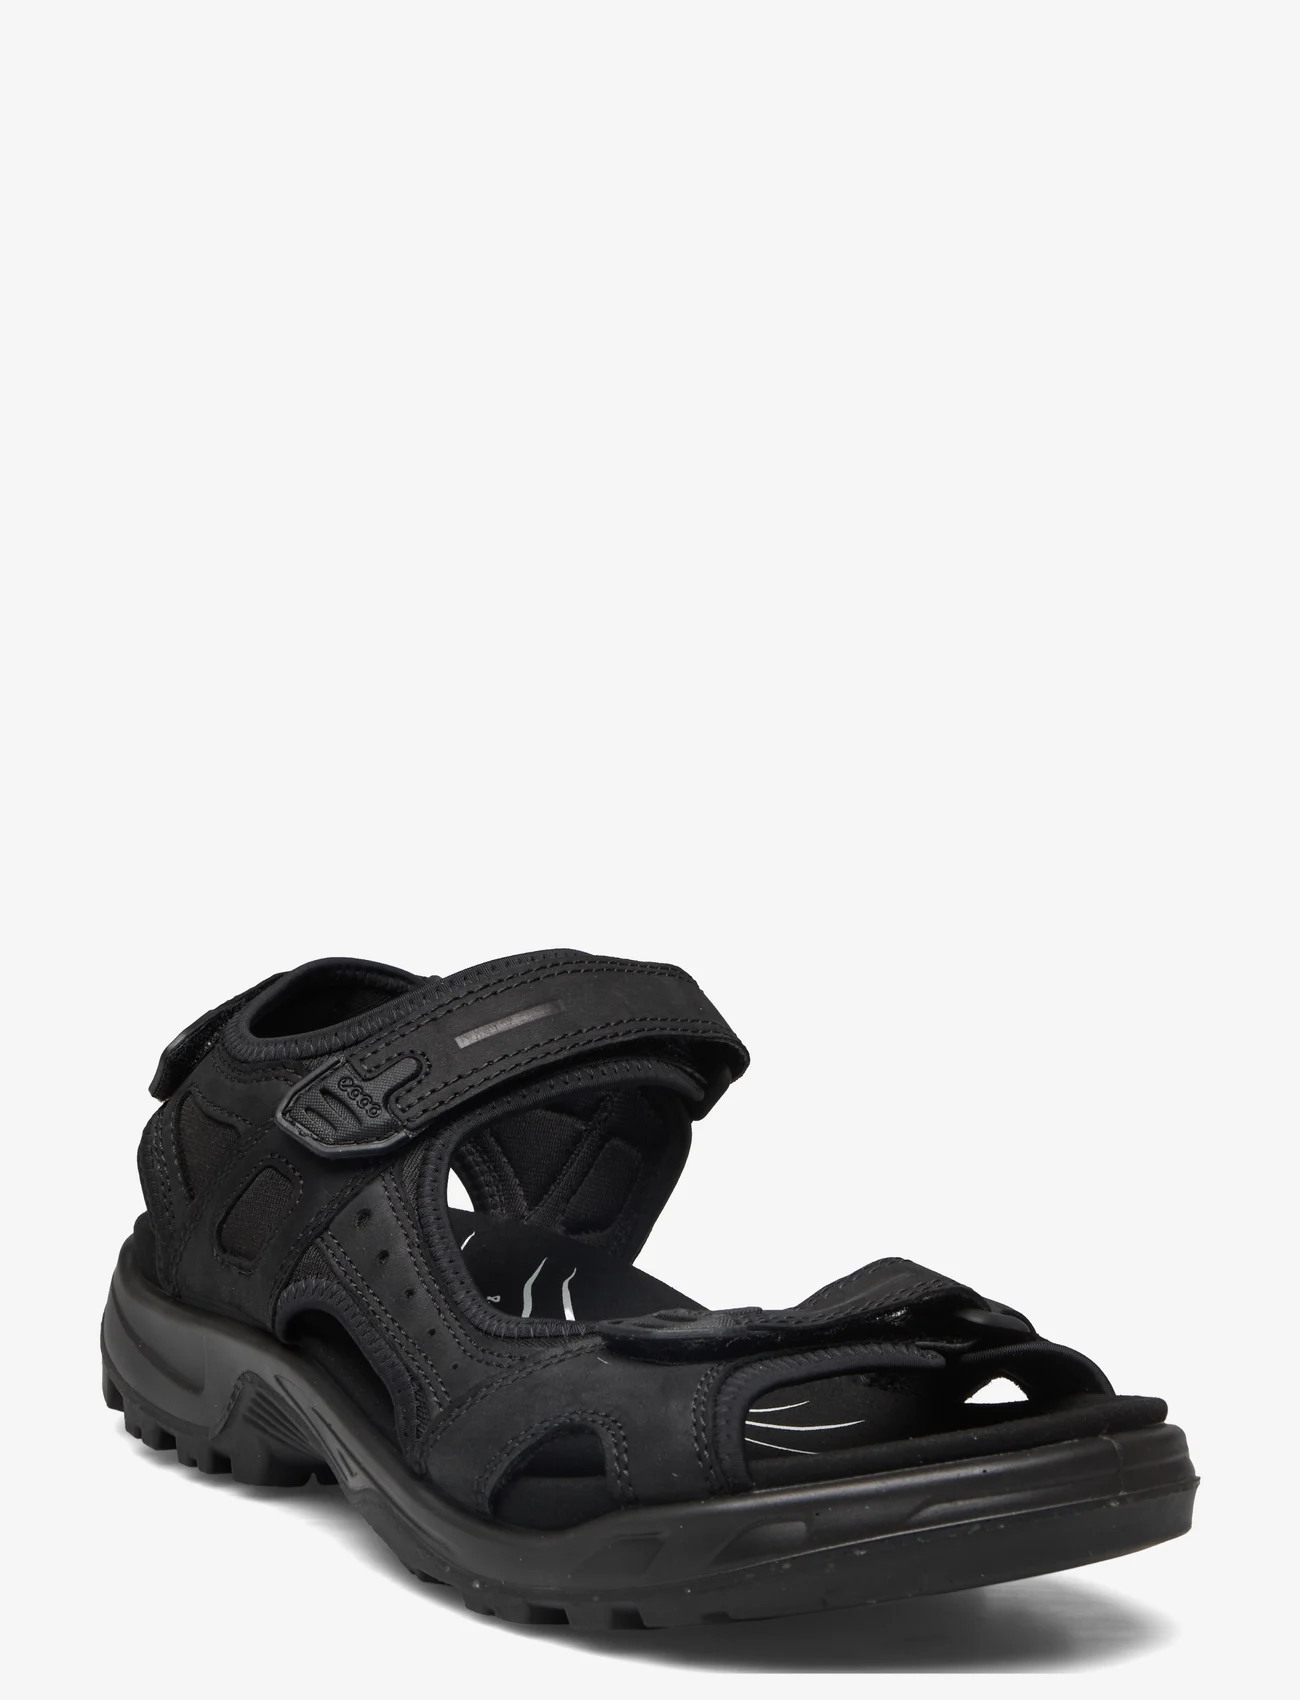 ECCO - OFFROAD - sandals - black - 0